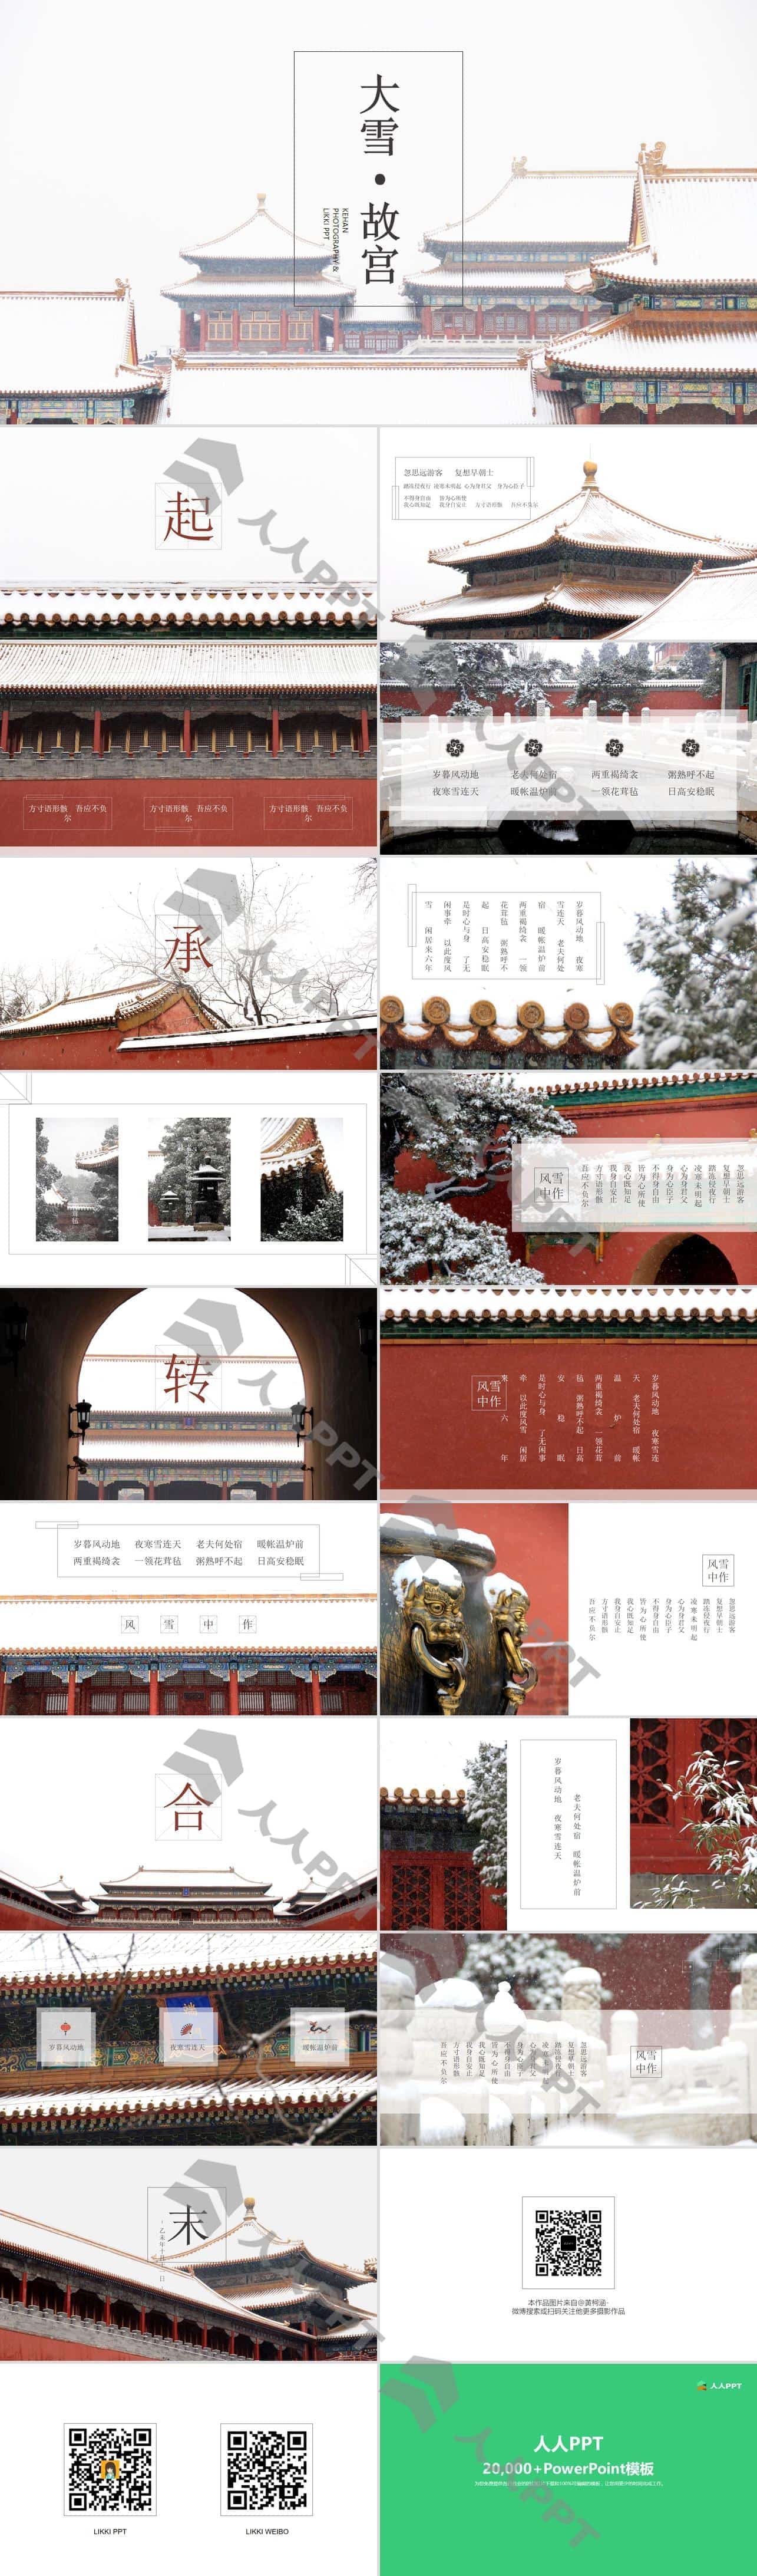 大雪.故宫――极简文字线条大图排版大雪后的故宫PPT模板长图